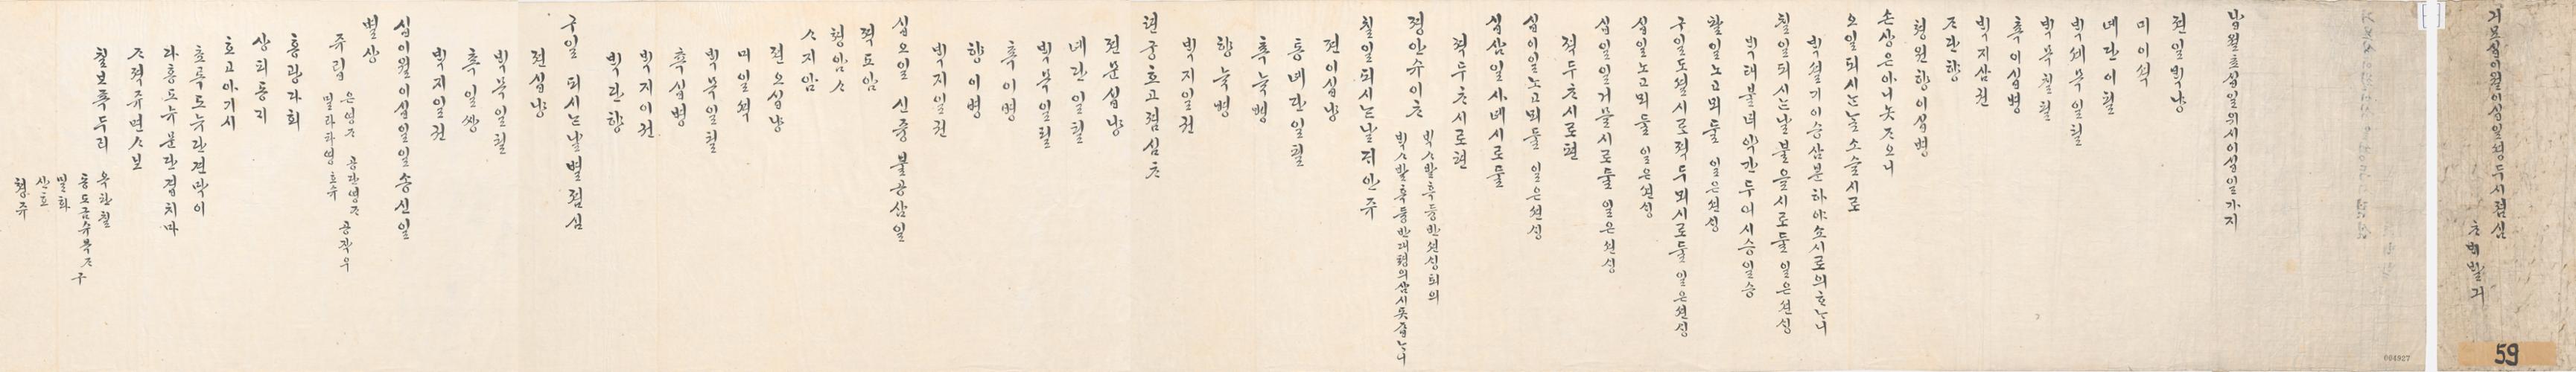 1879년 12월 왕세자 천연두 시 점심 차배 발기